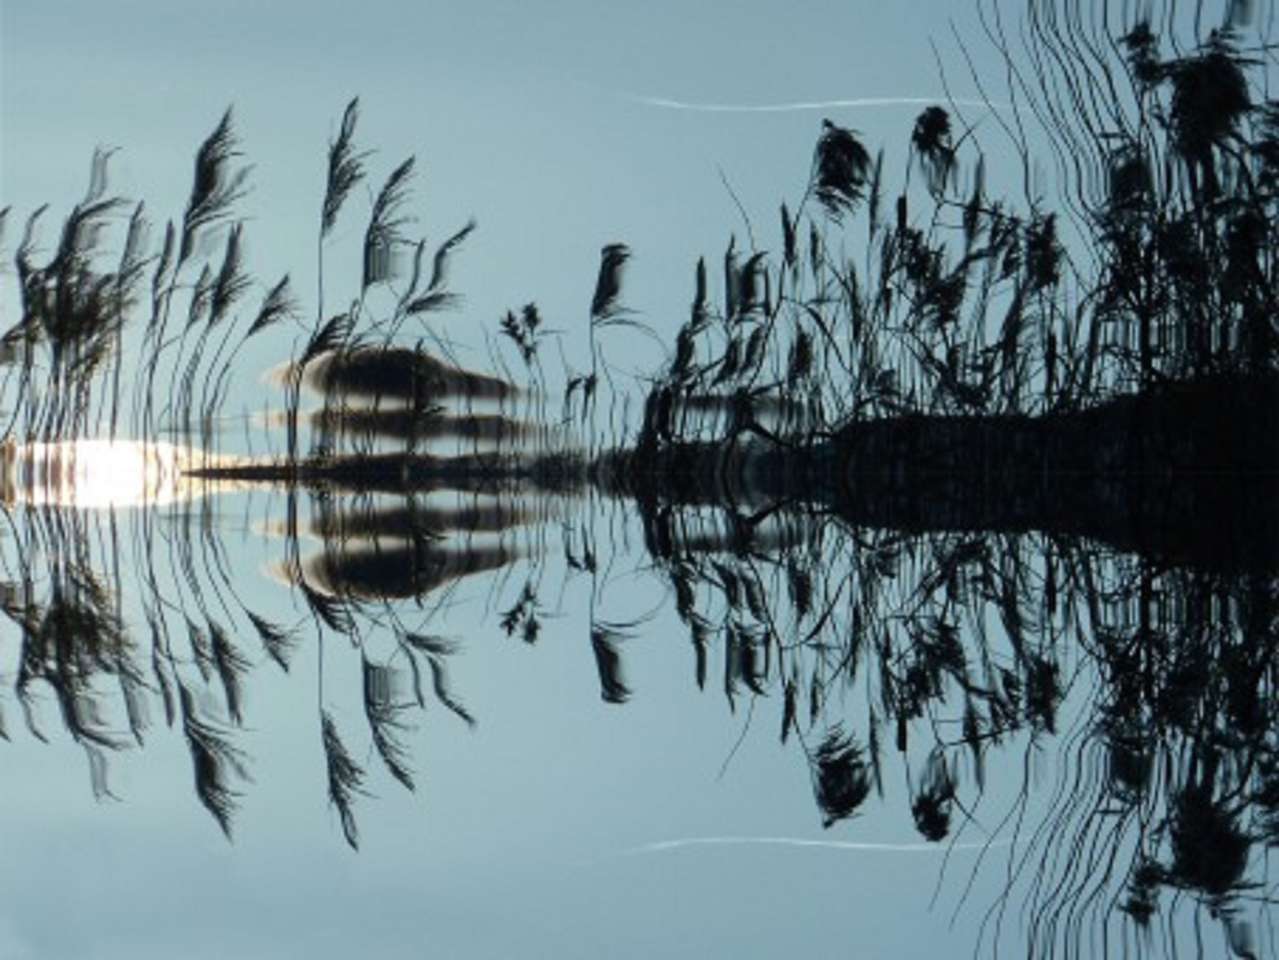 Reed care reflectă malul lacului jigsaw puzzle online